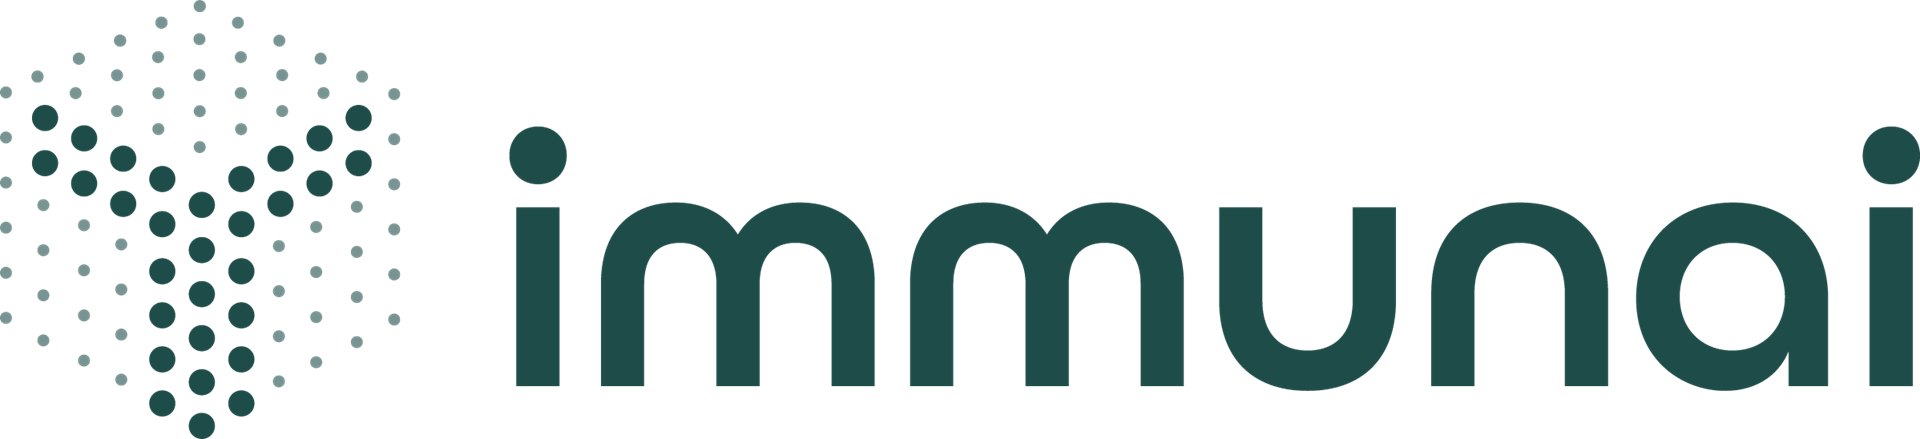 Immunai logo